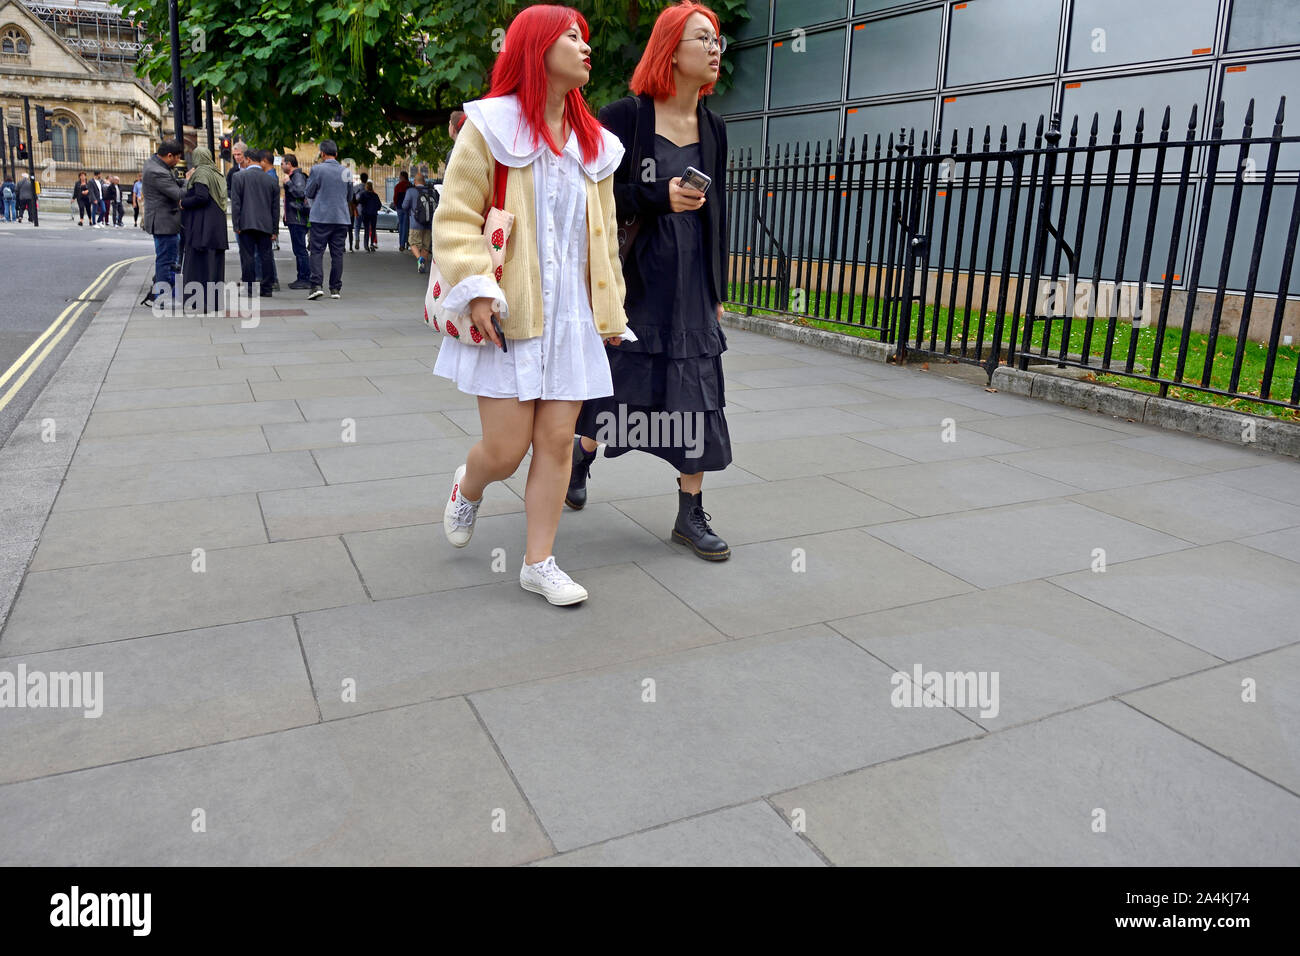 Londra, Inghilterra, Regno Unito. I turisti giapponesi con i capelli rossi in Westminster Foto Stock